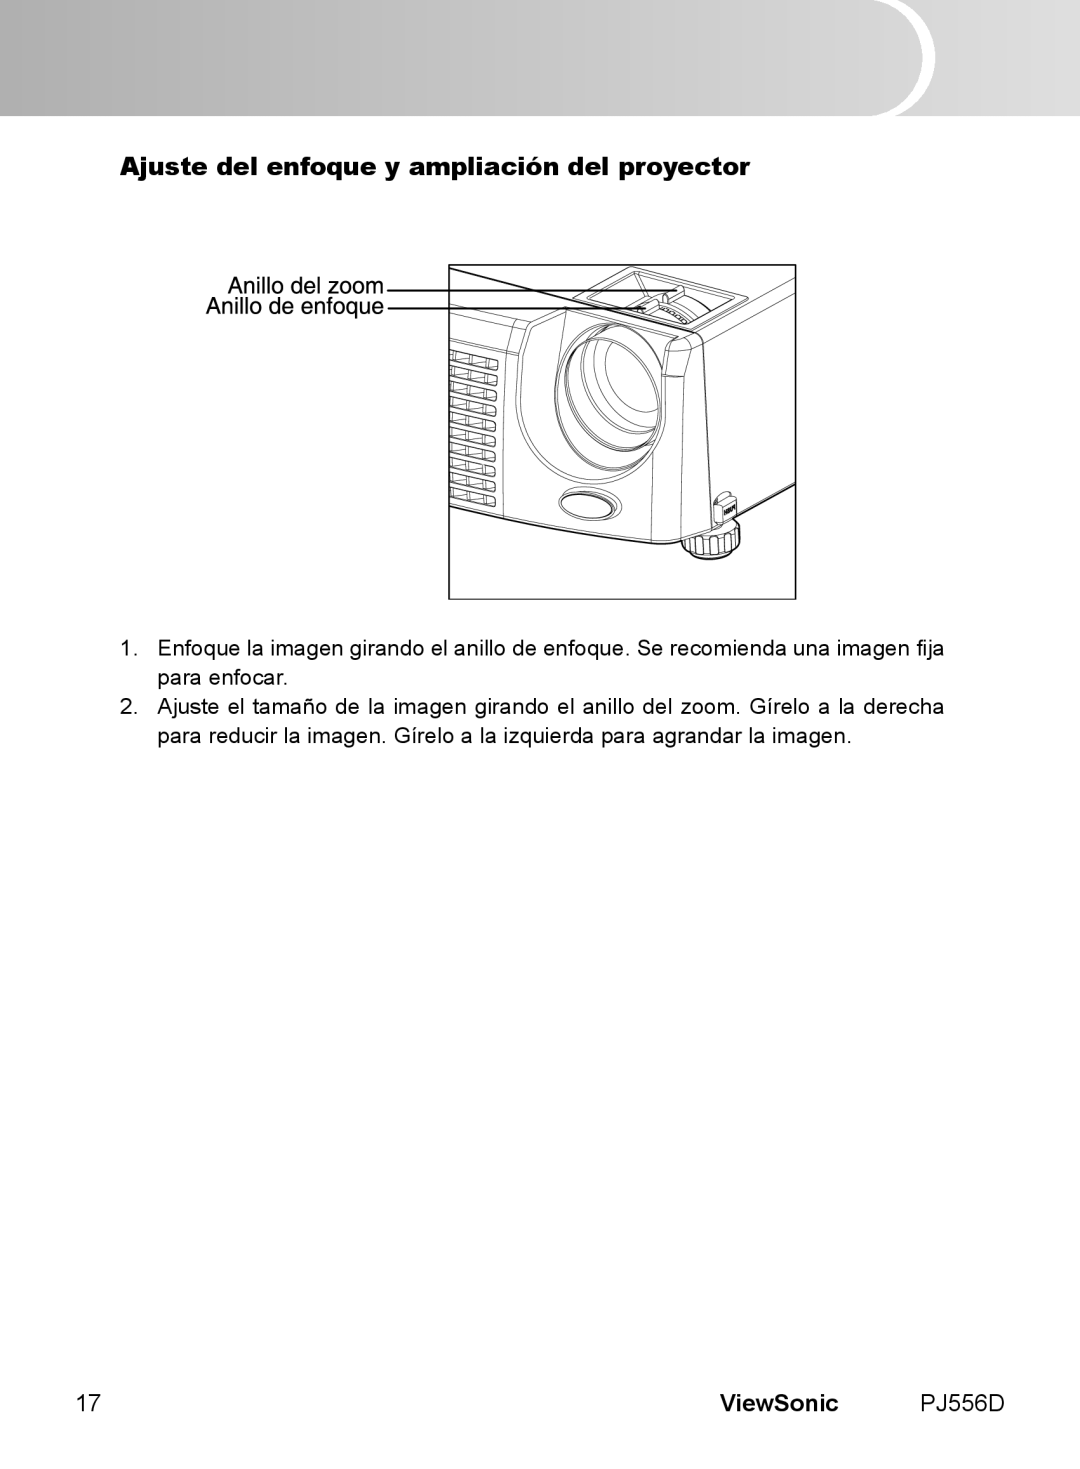 ViewSonic PJ556D manual Ajuste del enfoque y ampliación del proyector, ViewSonic 